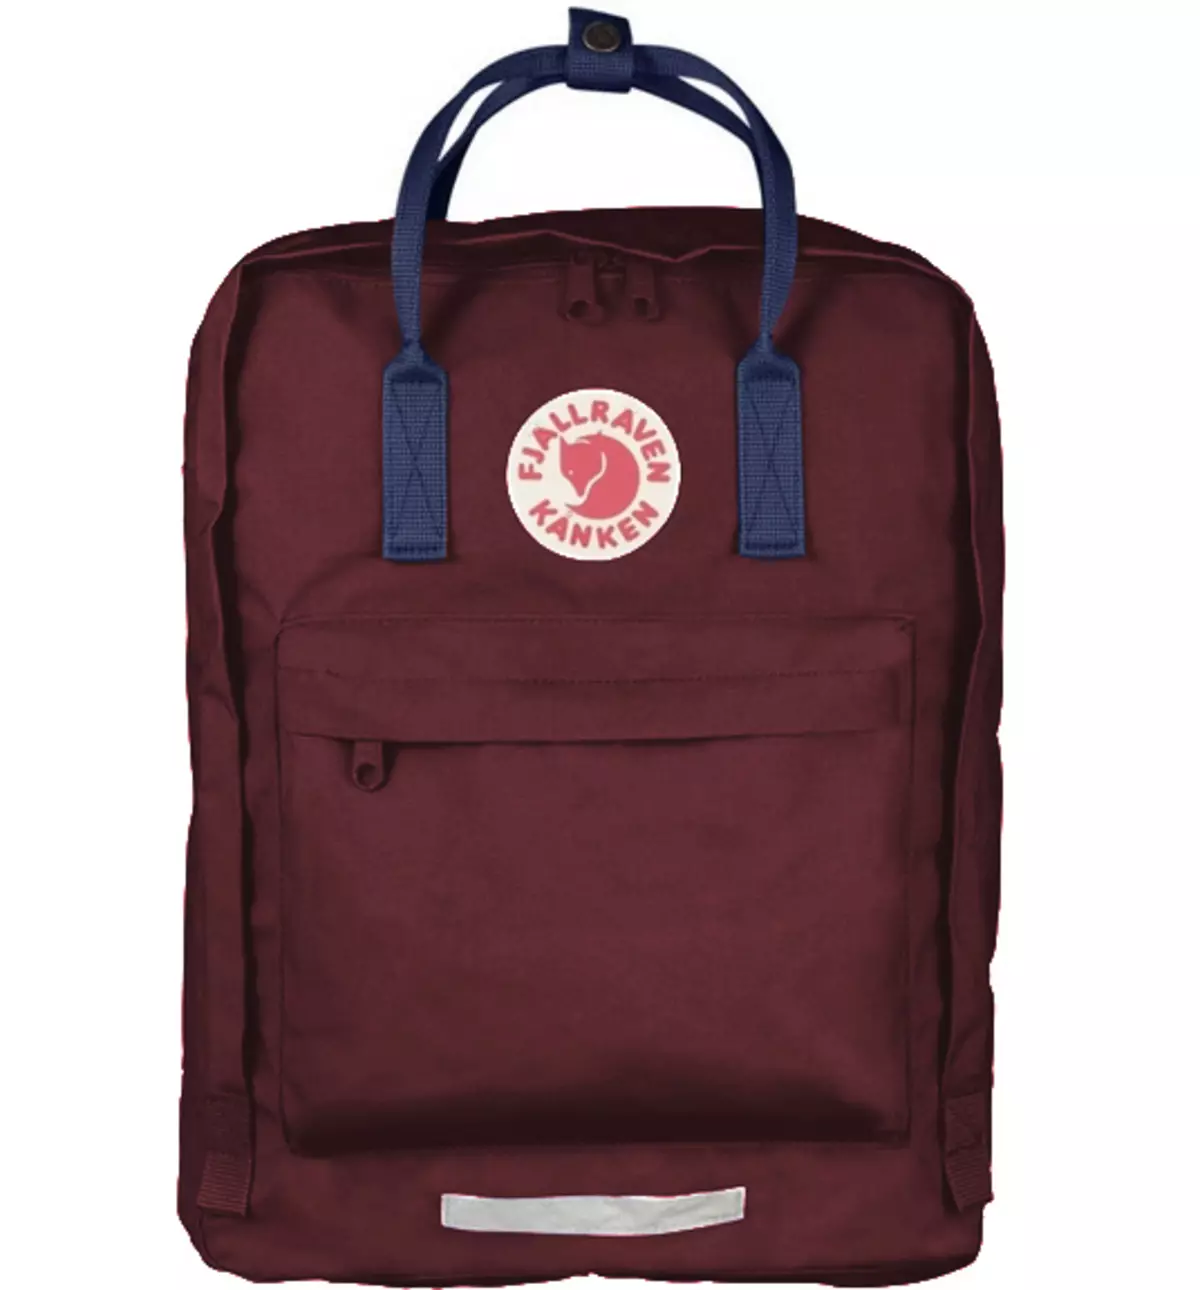 Kanken Backpacks til skole: Hvad bedre at bære i skole? Oversigt over skole rygsække til teenagere. Hvad er bedre at købe? Moderigtige rygsække til piger 23691_23